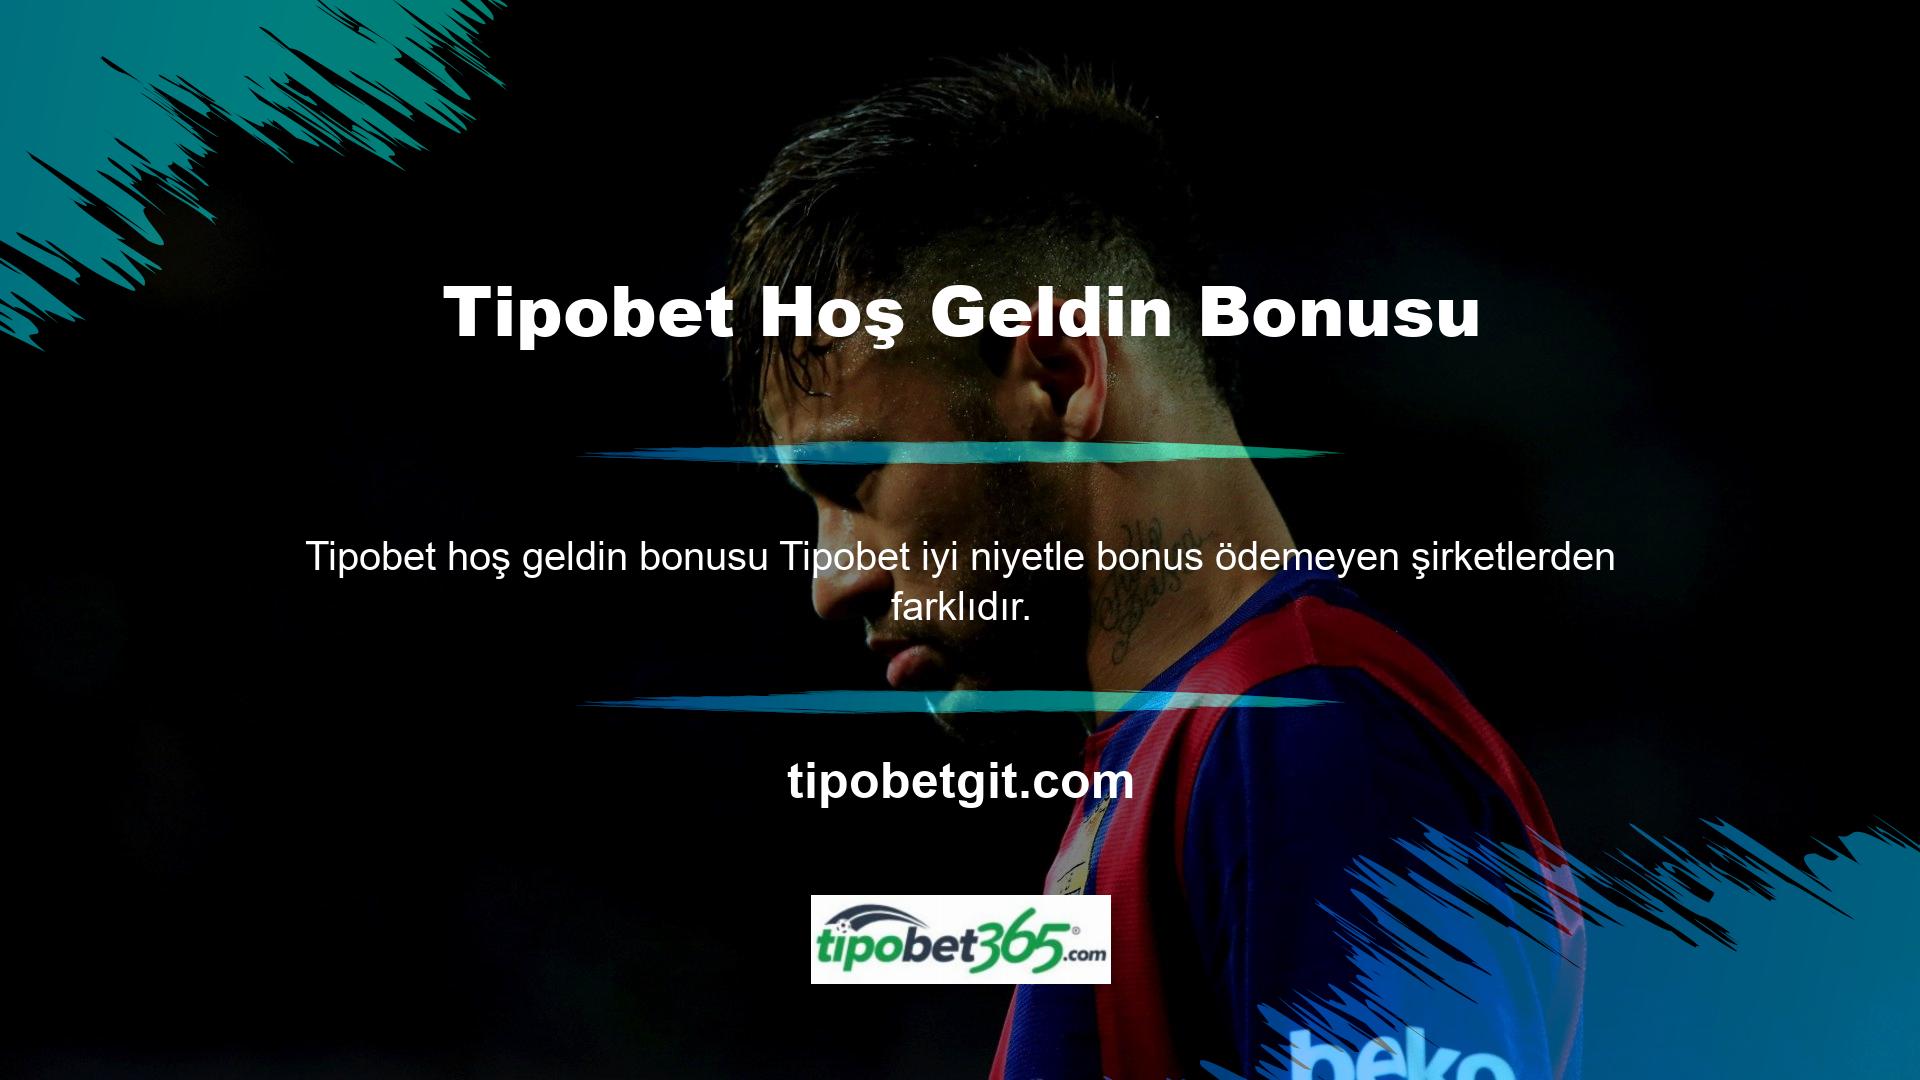 Tipobet Casino web sitesi, bahisçilerin bonus kampanyalarına ilişkin faaliyetlerden yararlanabilmesi için basit değişim koşulları oluşturmuştur